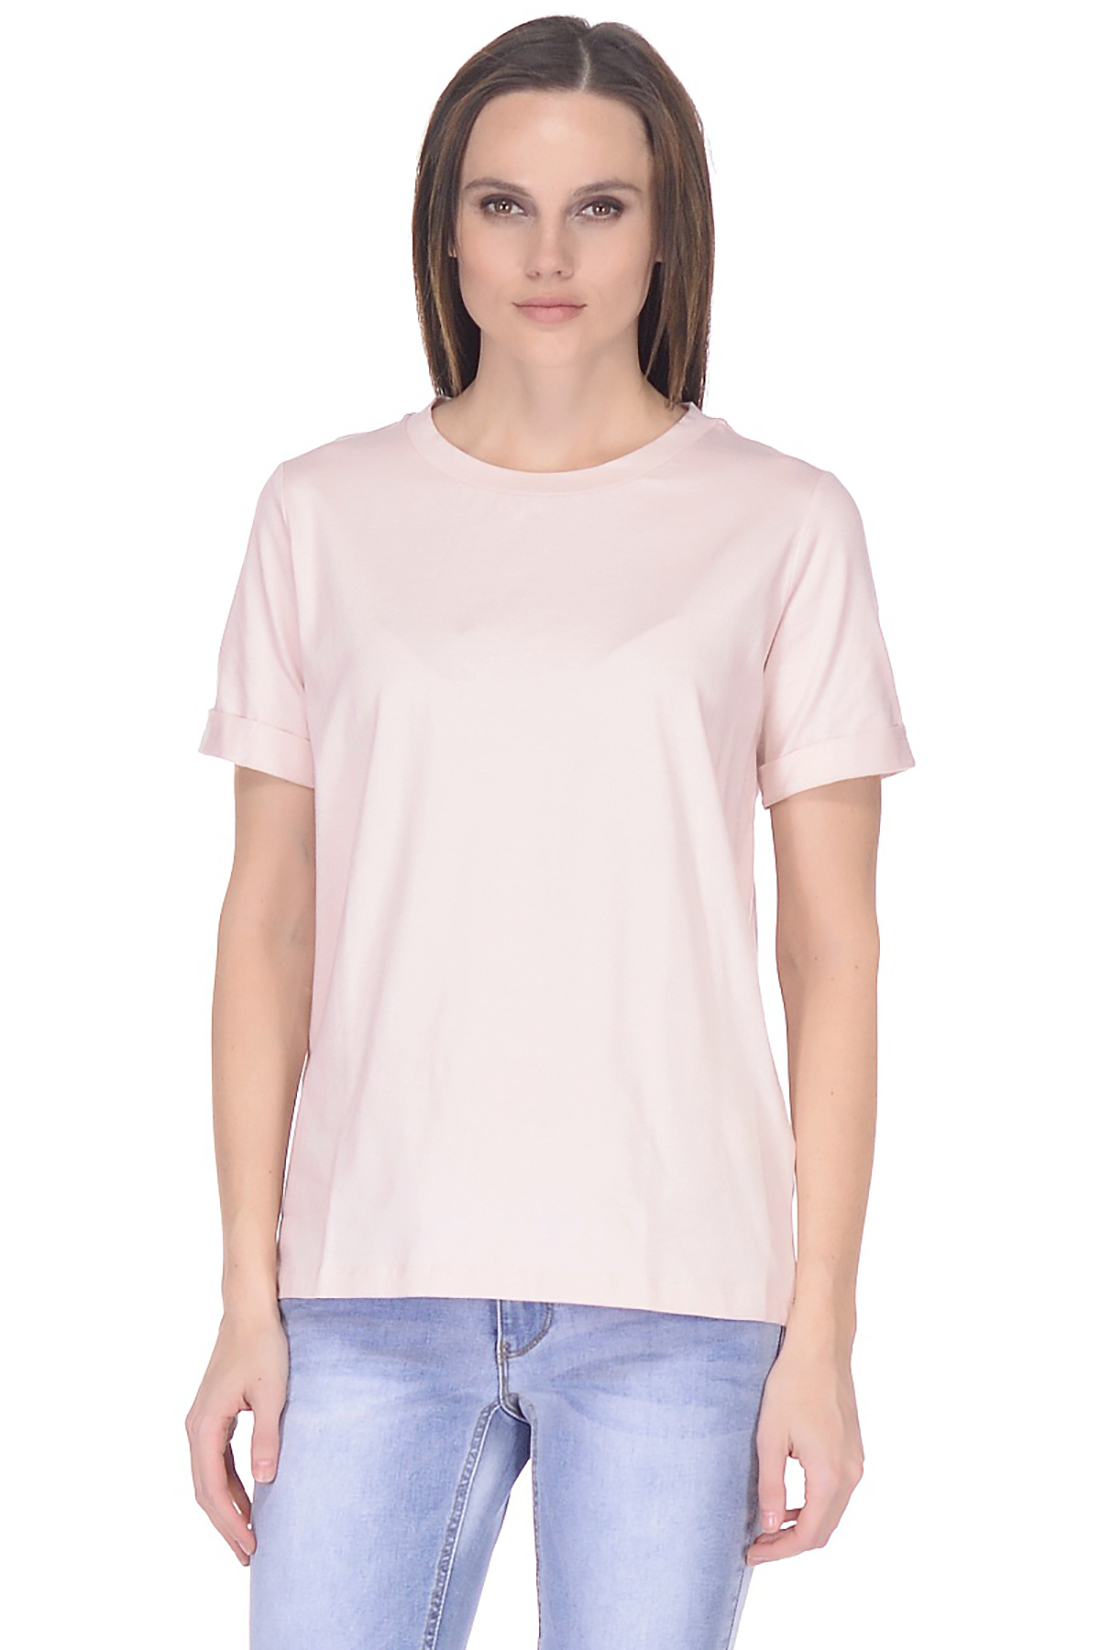 Прямая базовая футболка (арт. baon B238205), размер M, цвет розовый Прямая базовая футболка (арт. baon B238205) - фото 1